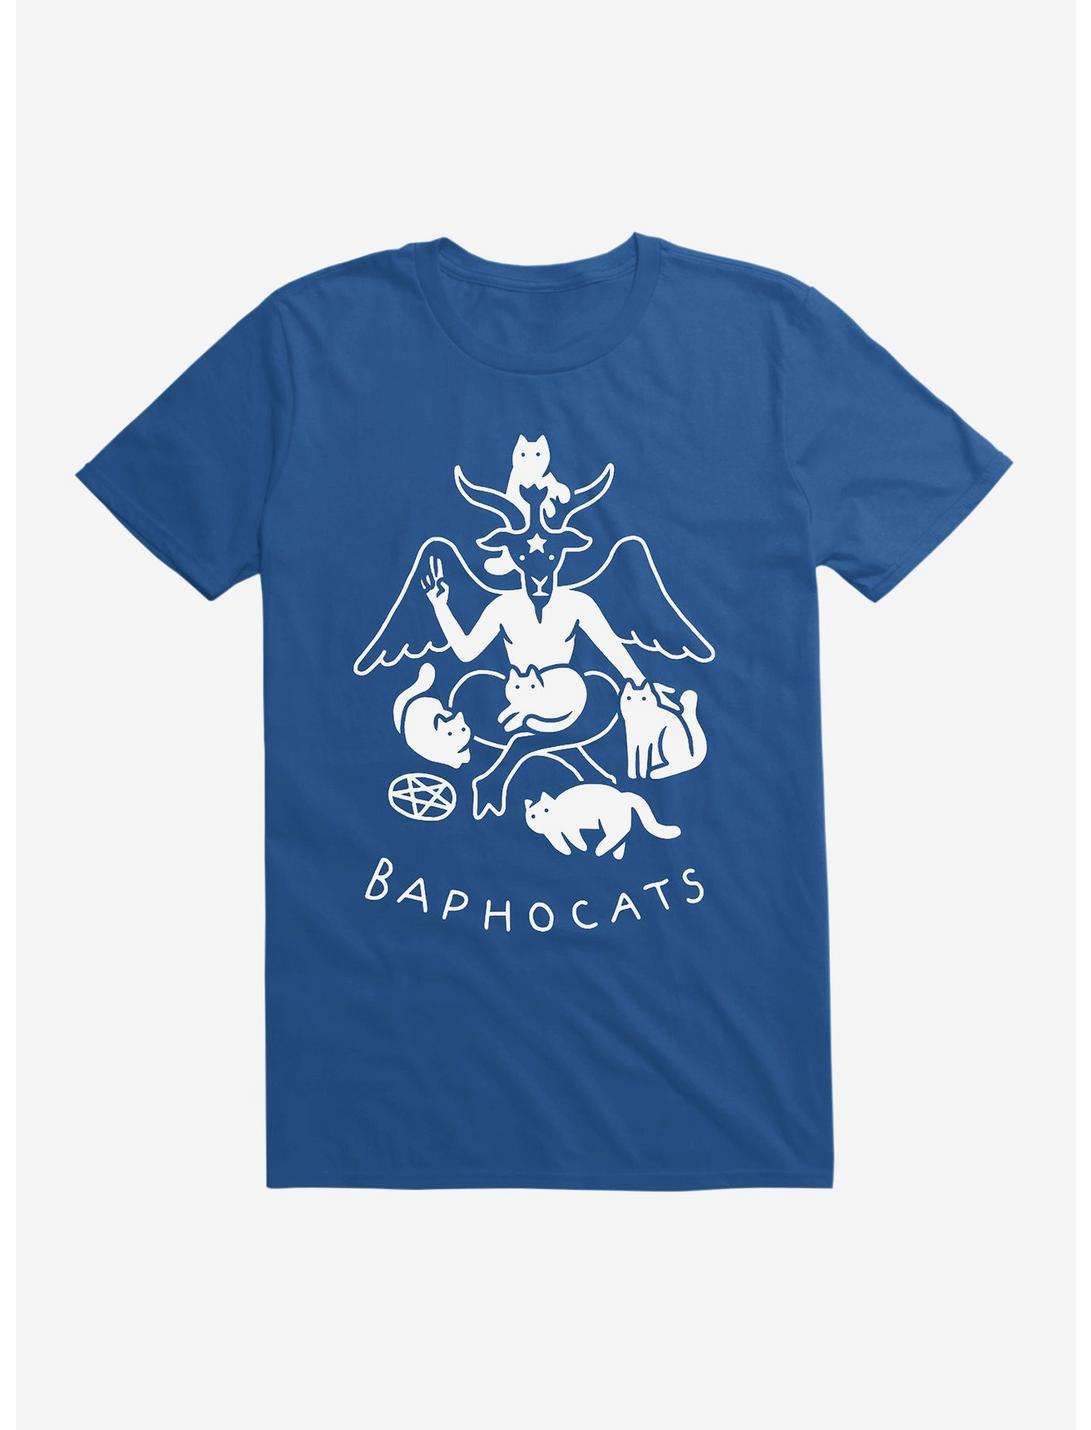 Baphocats T-Shirt, ROYAL, hi-res